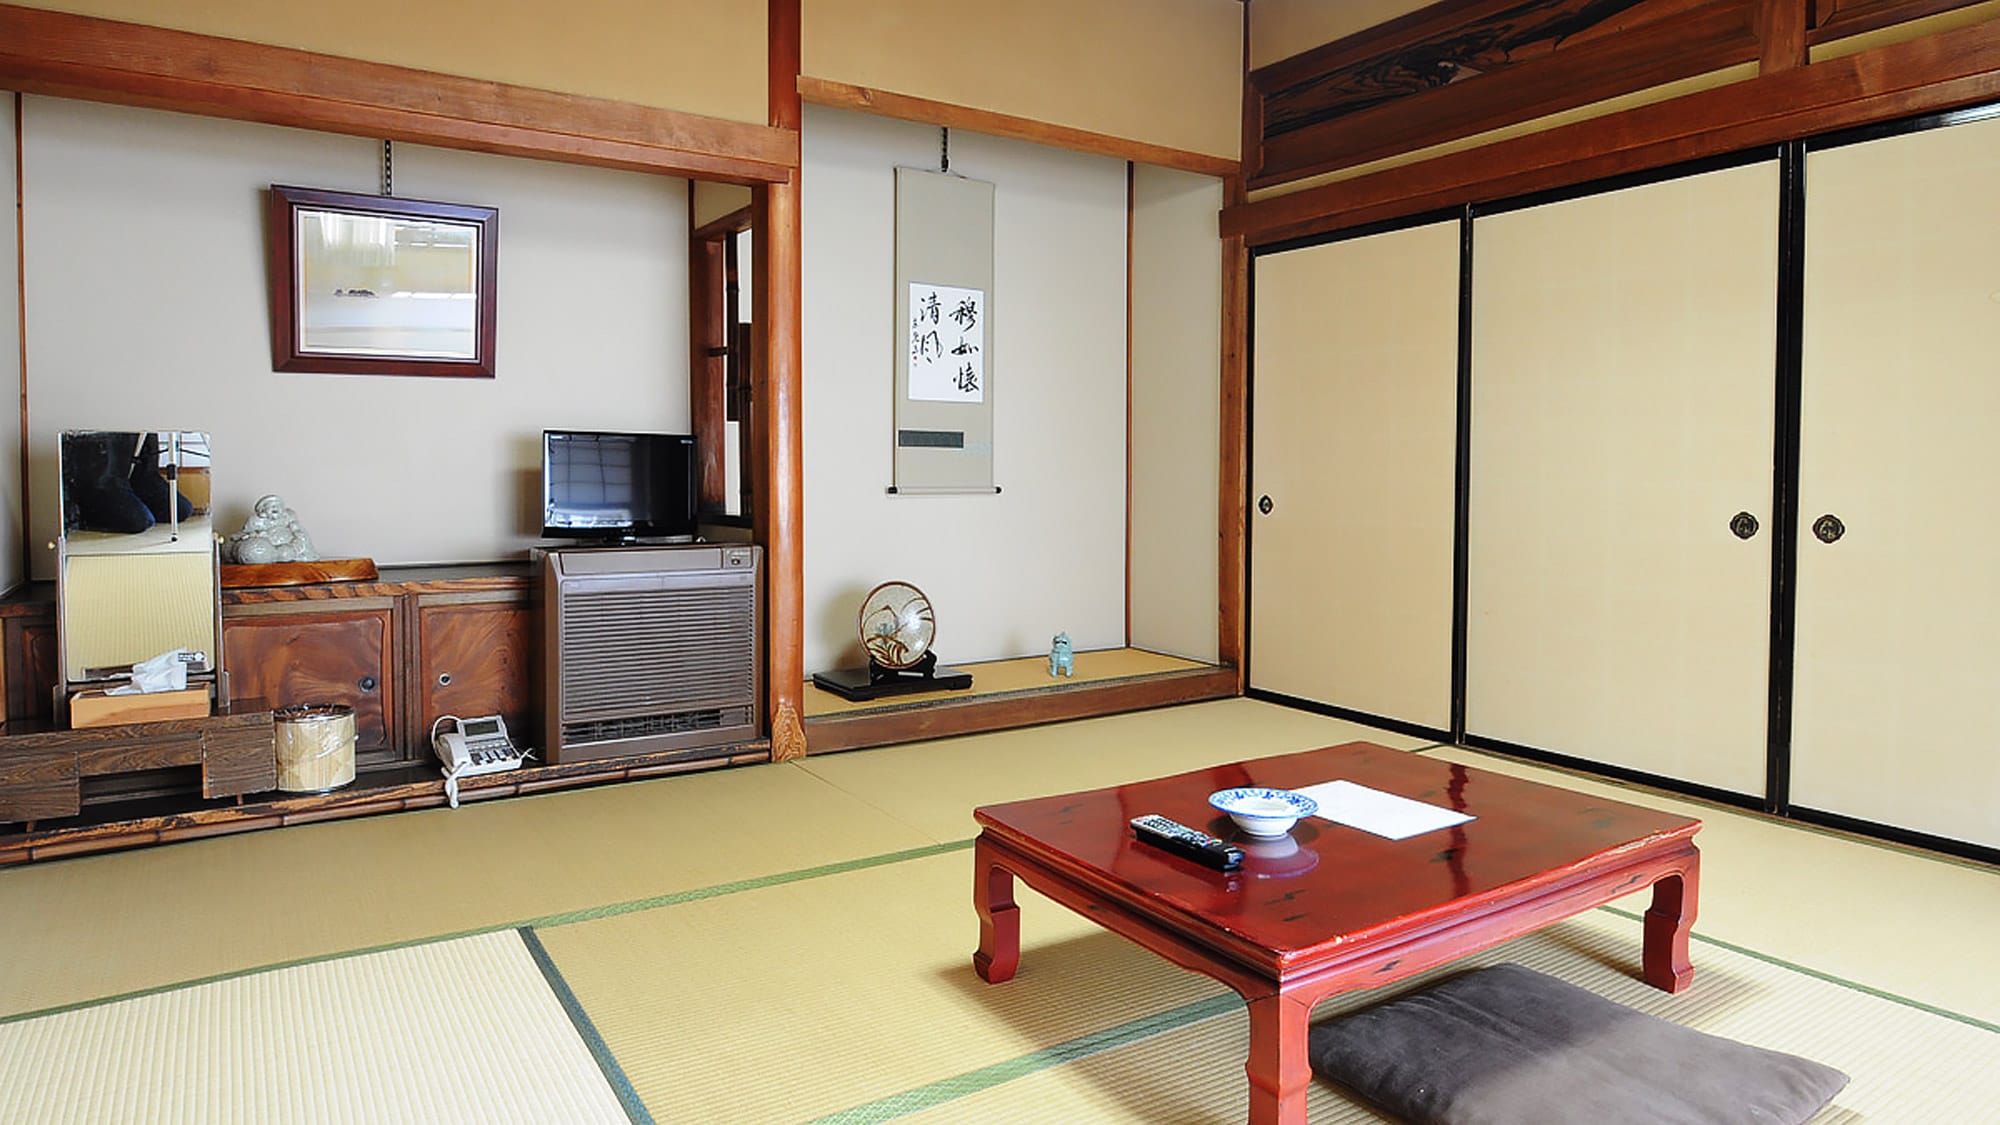 【日式房间8张榻榻米】老式纯日式房间 *请注意，此房间没有钥匙，无法上锁。